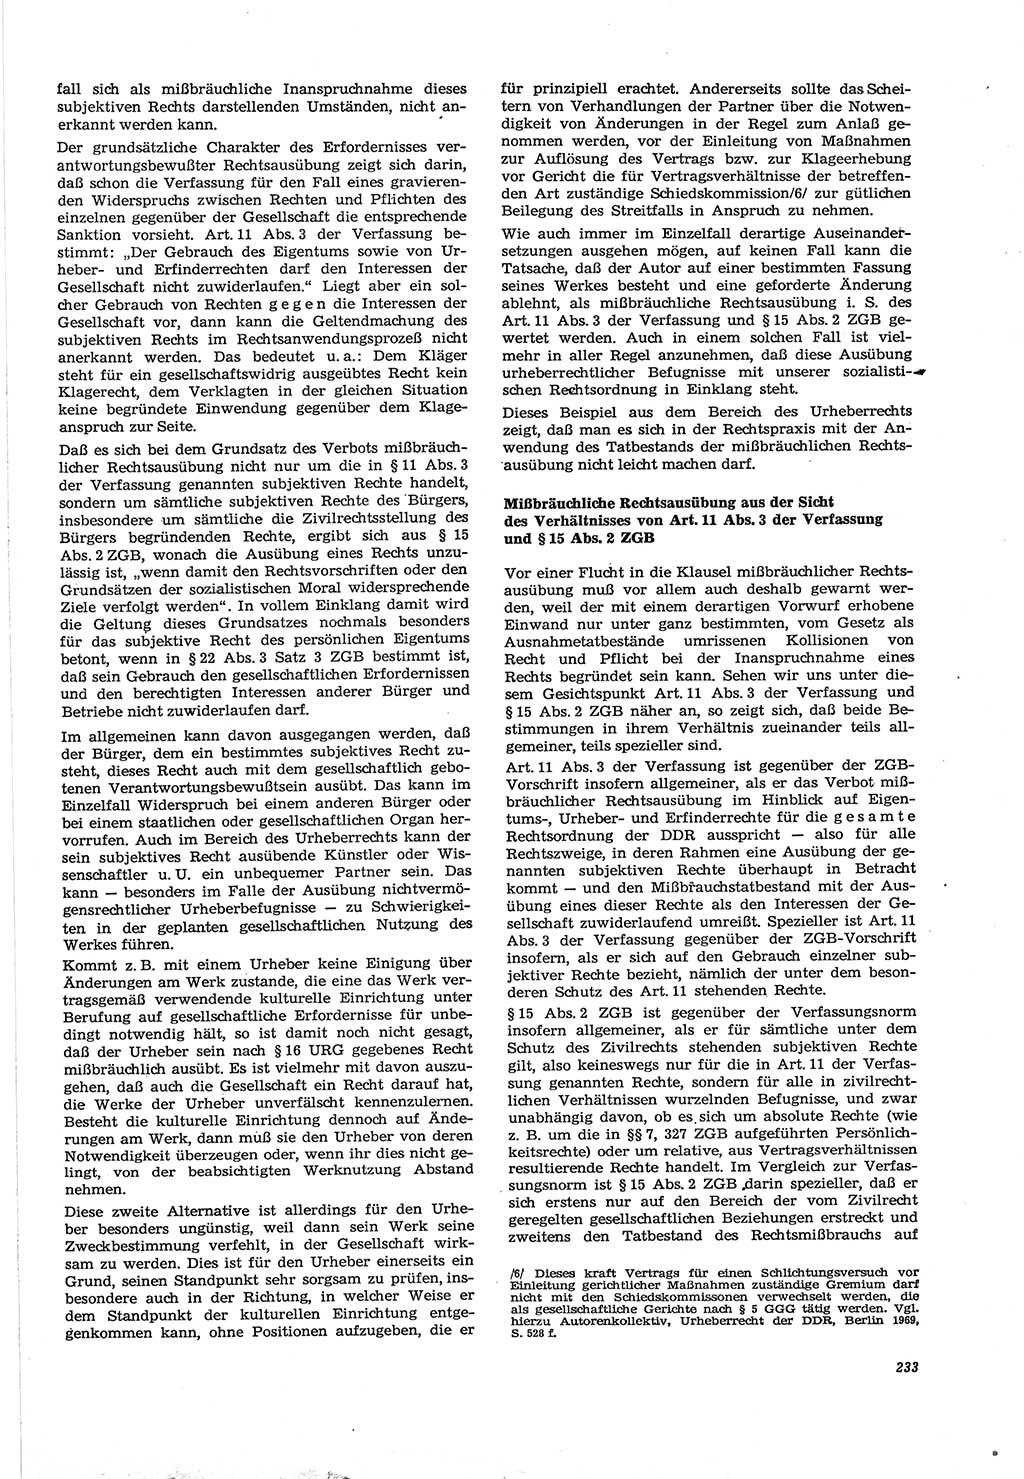 Neue Justiz (NJ), Zeitschrift für Recht und Rechtswissenschaft [Deutsche Demokratische Republik (DDR)], 30. Jahrgang 1976, Seite 233 (NJ DDR 1976, S. 233)